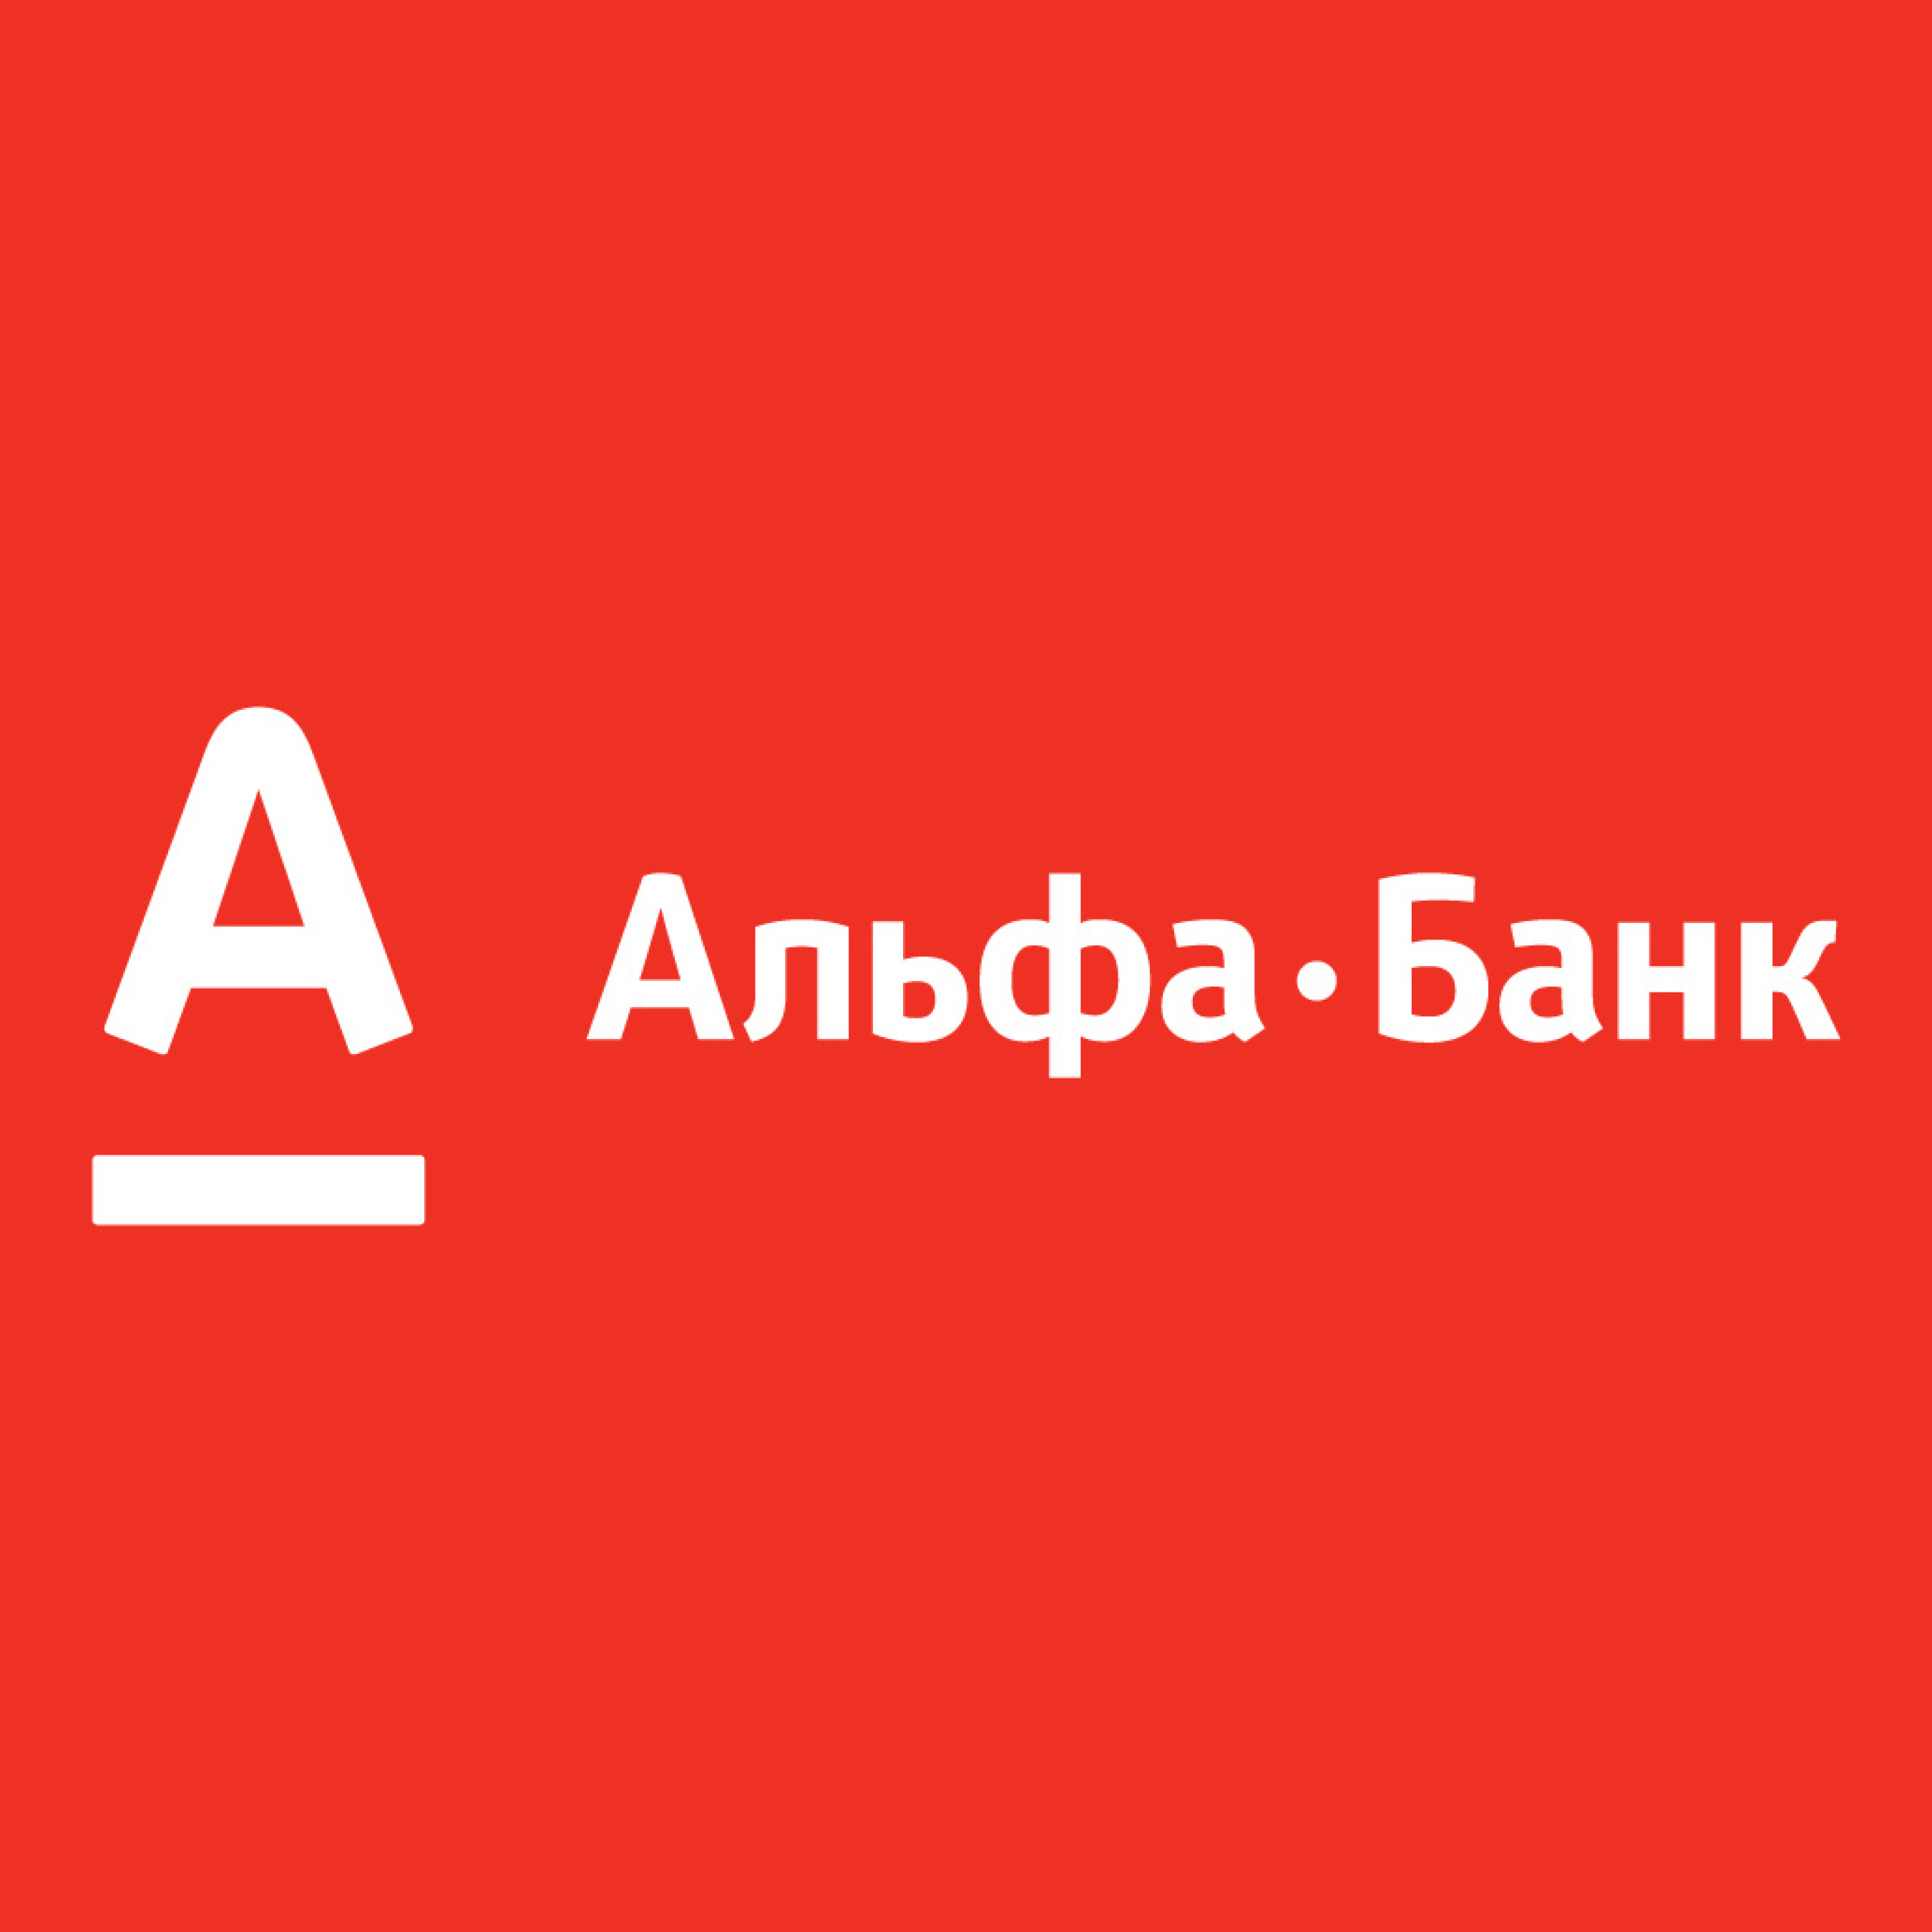 Стикер на телефон альфа банк. Альфа банк. Логотип банка Альфа банк. Альфа банк Казахстан логотип. Альфа банк логотип новый.